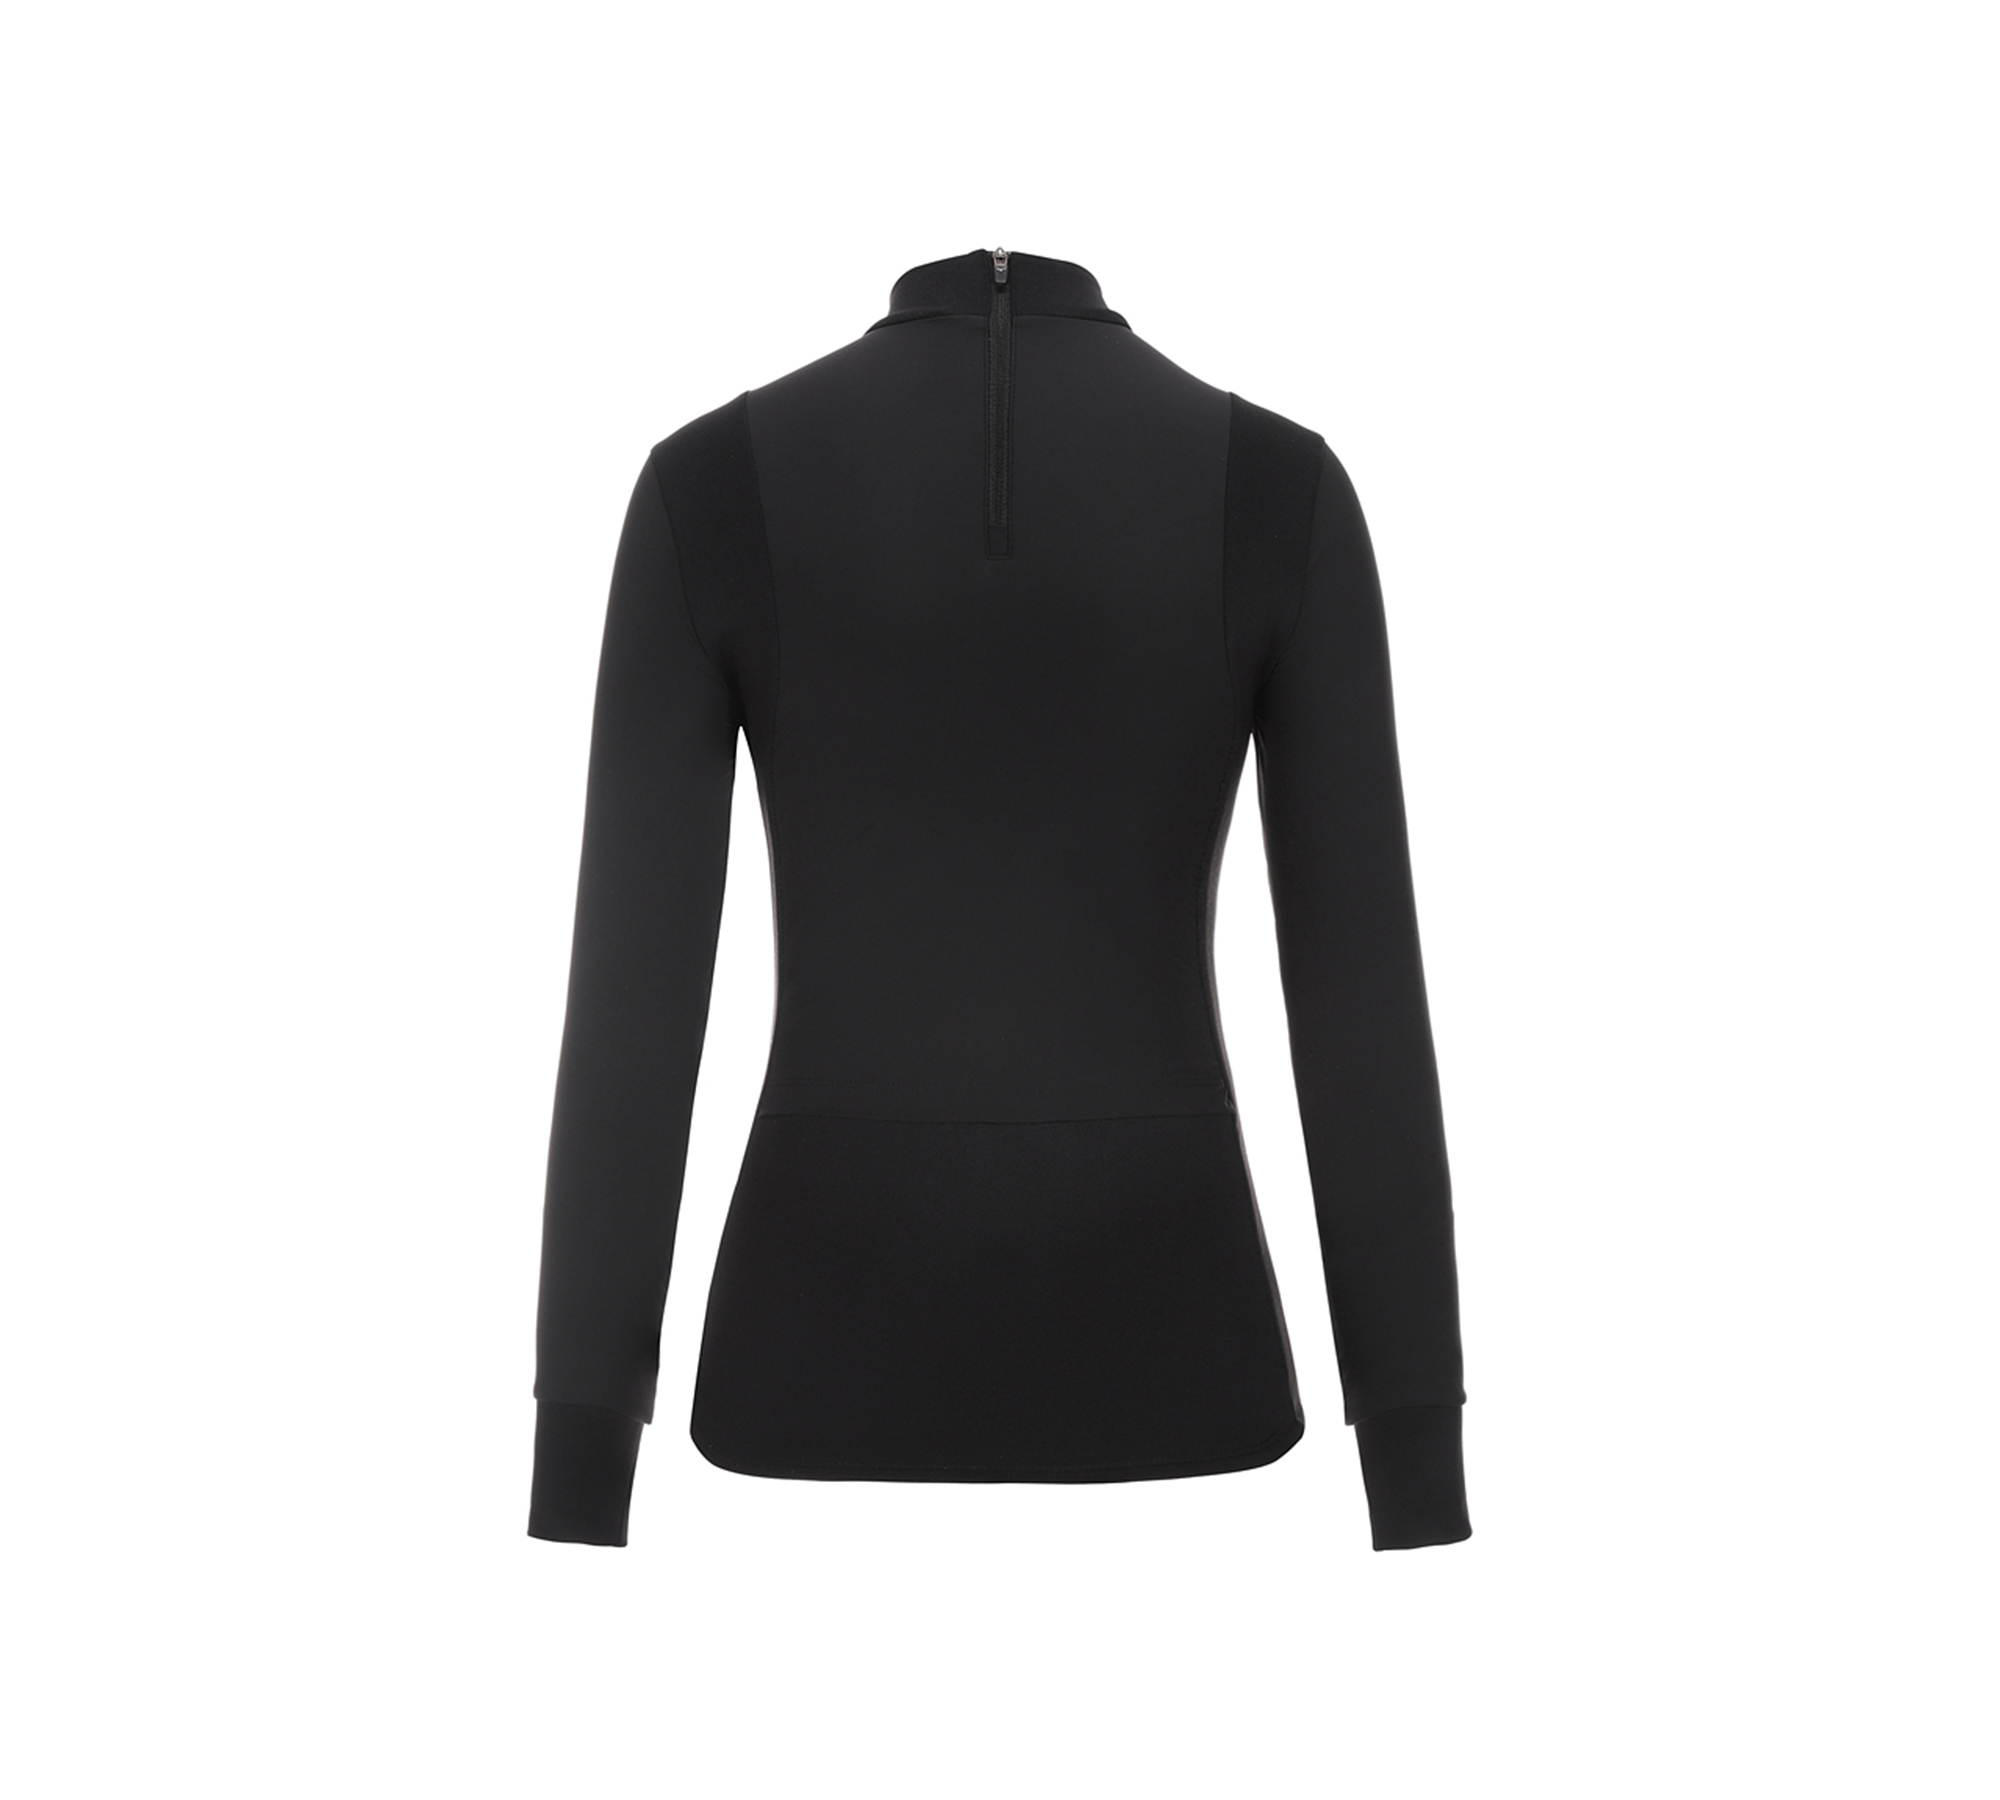 FG 여성 겨울 하이넥 티셔츠_52KA1804, 블랙